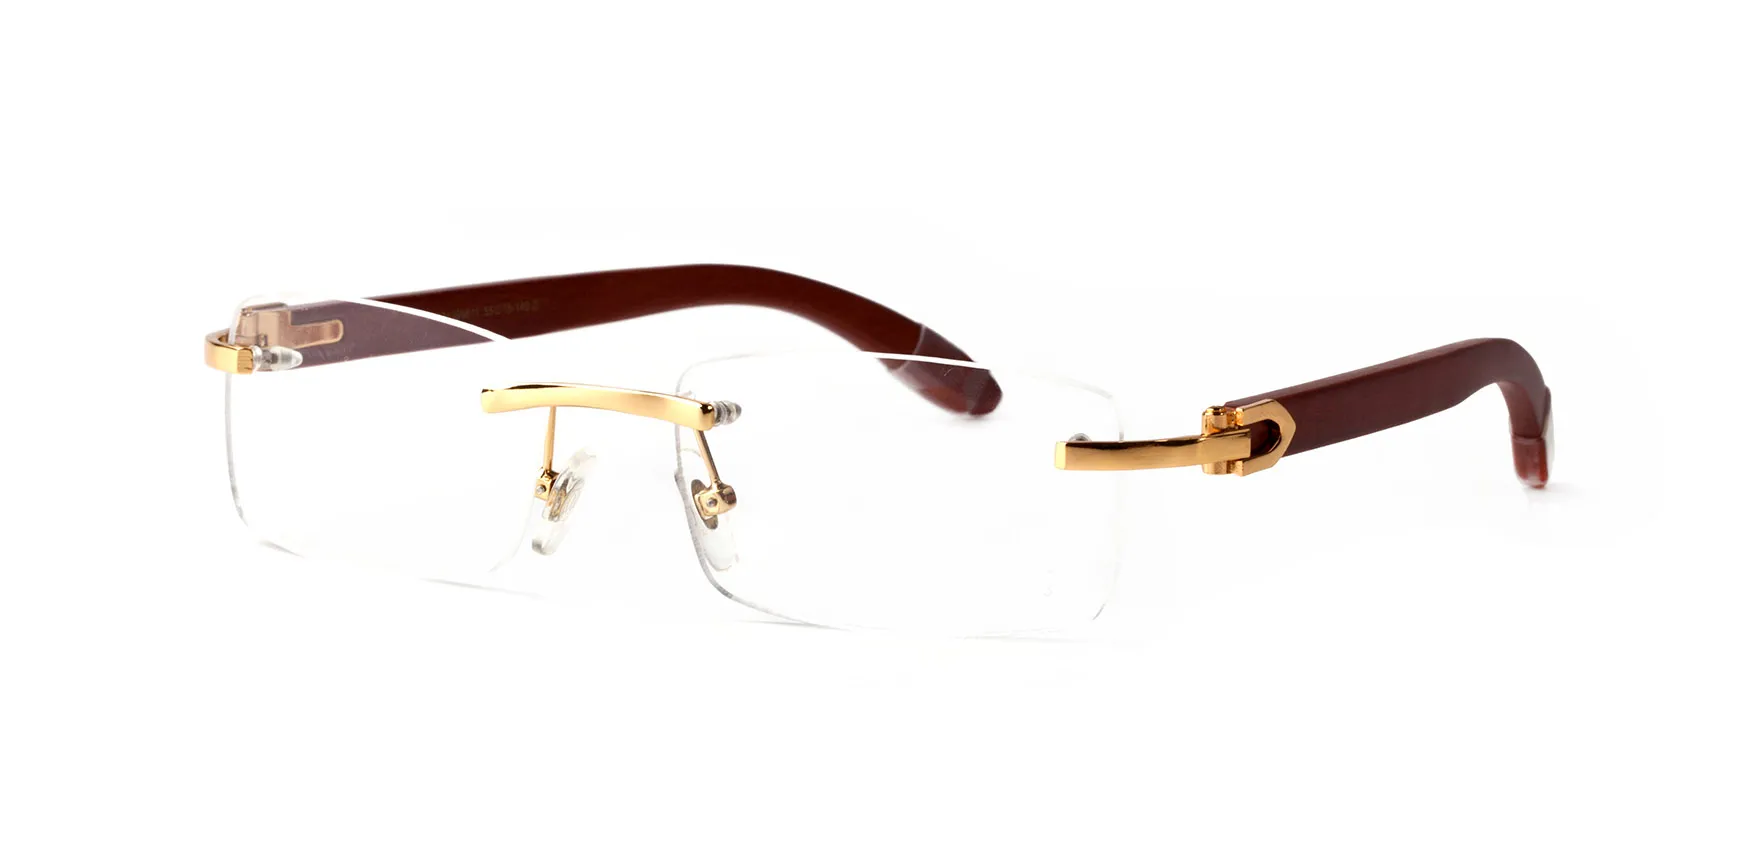 Neue Büffelhorn-Sonnenbrille, modische Sport-Sonnenbrille für Männer und Frauen, randlose Rechteck-Bambusholz-Brille mit Boxen ca308I